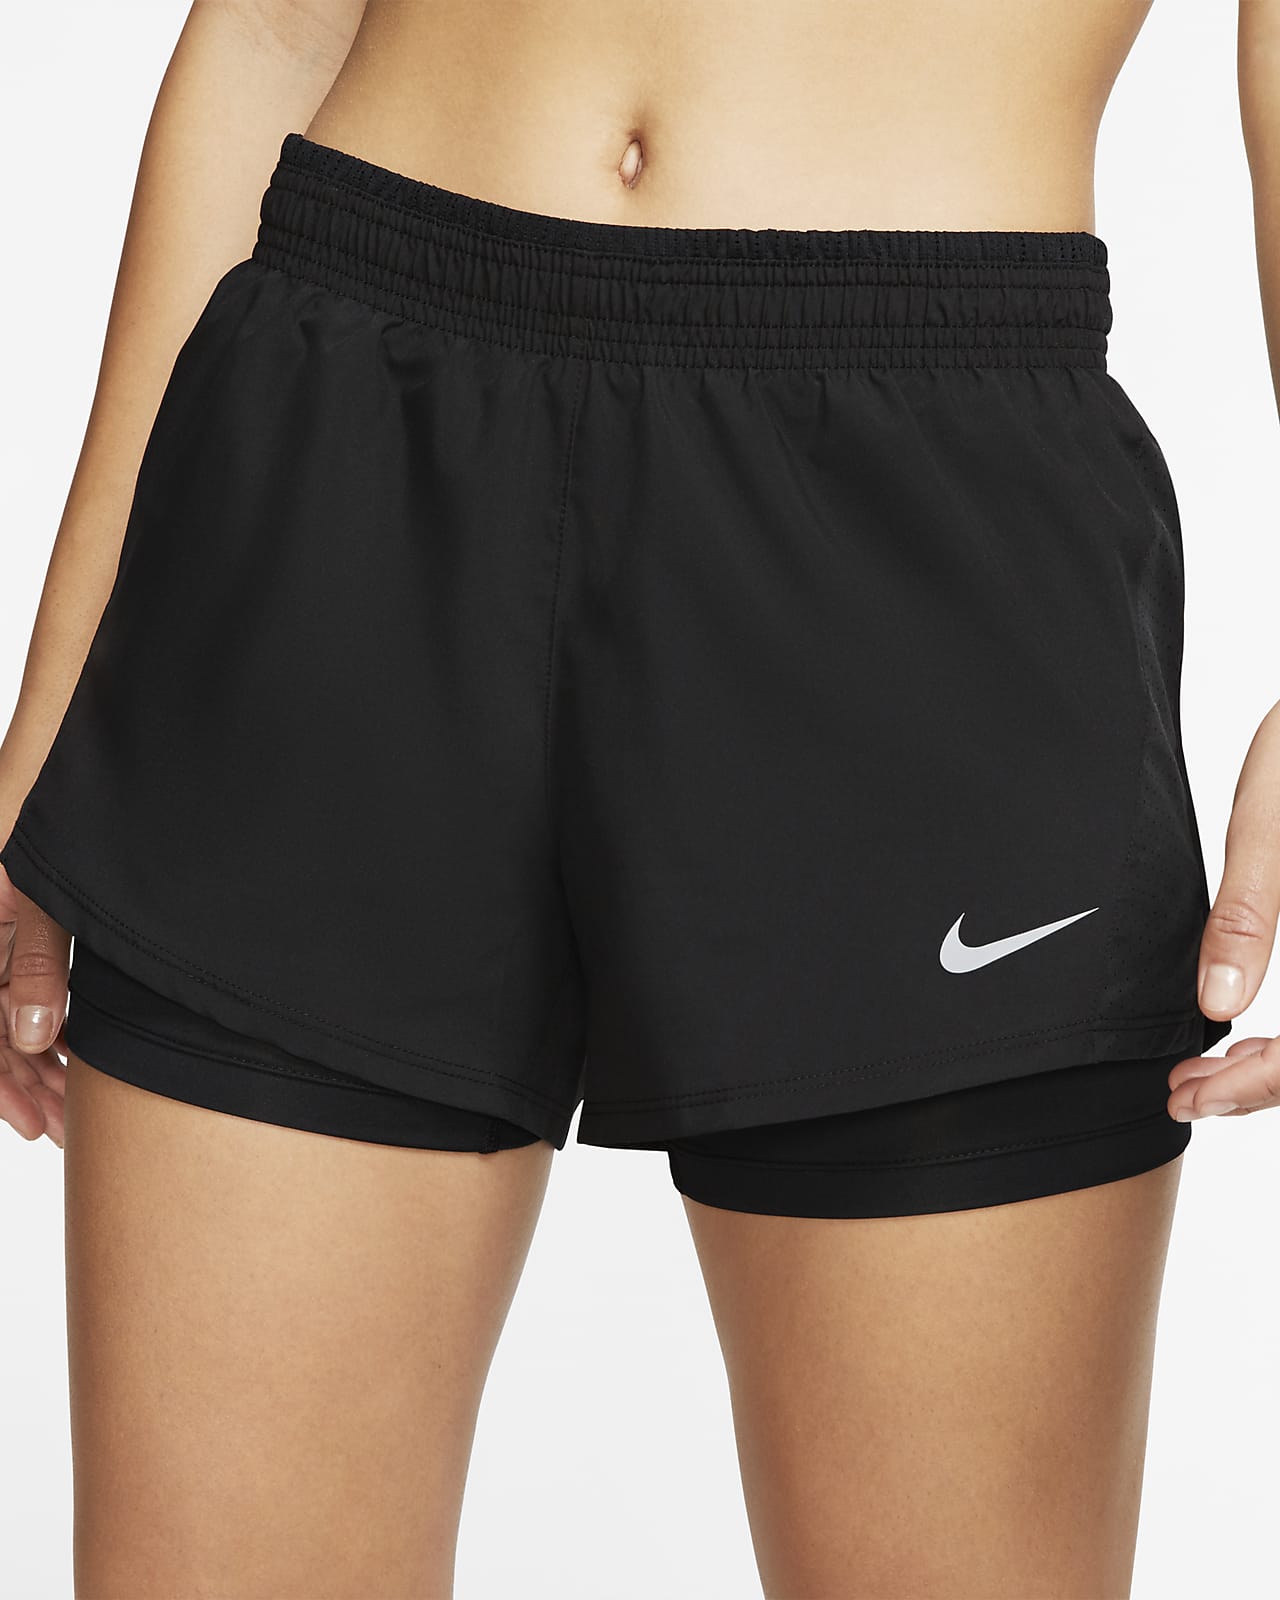 Nike corto de running 2 en - Mujer. Nike